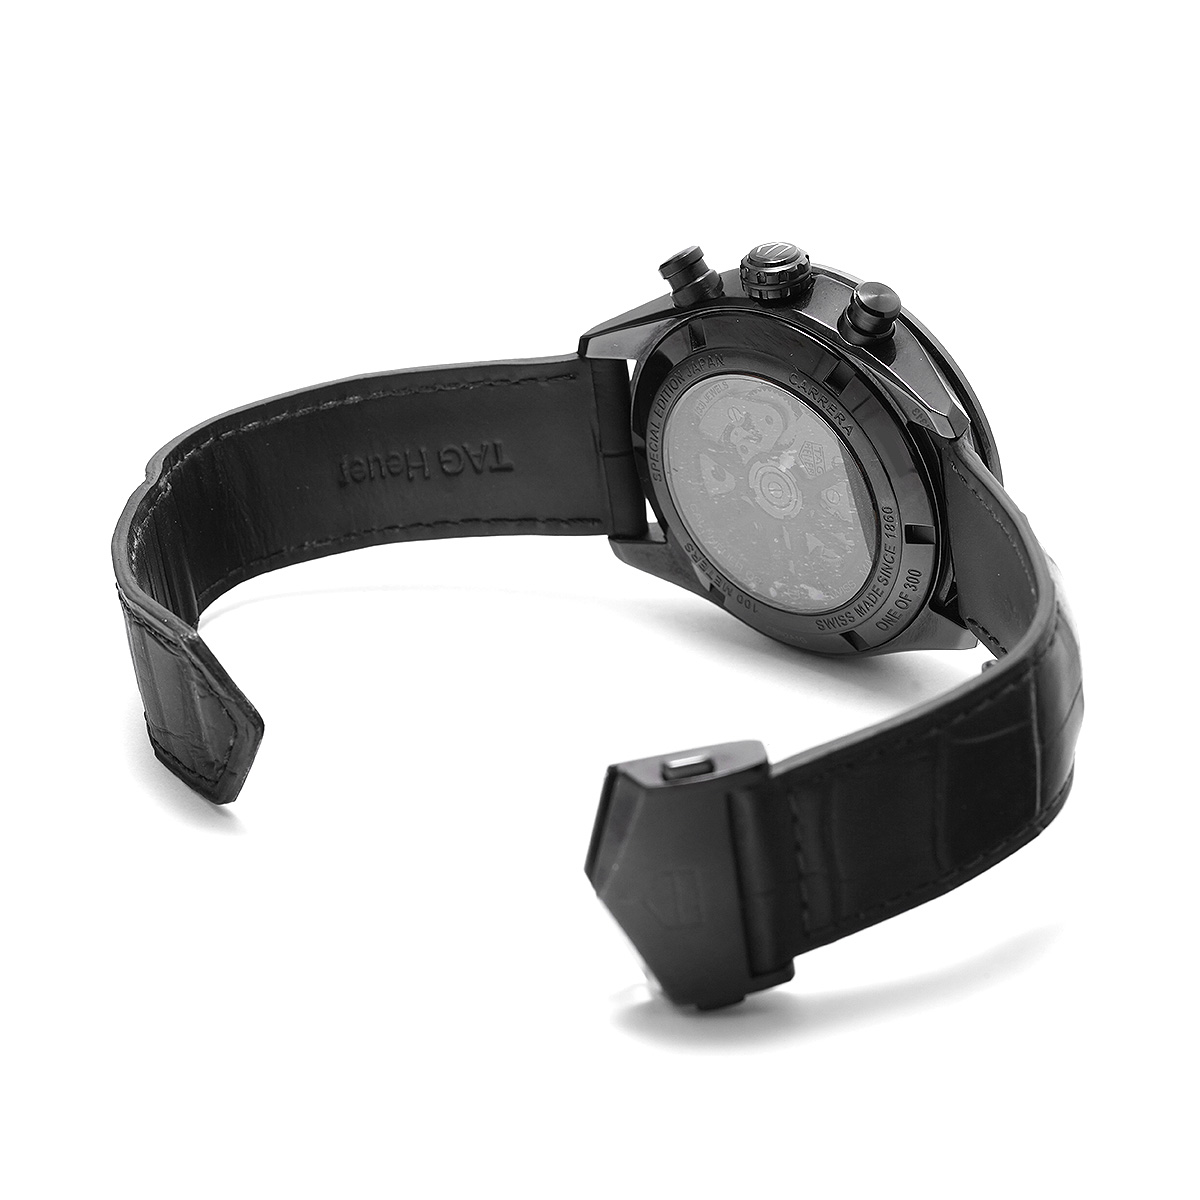 タグ ホイヤー カレラ キャリバーホイヤー02 ジャパン ブラックエディション CBN2A1G.FC6501 ブラック メンズ 時計  【中古】【wristwatch】